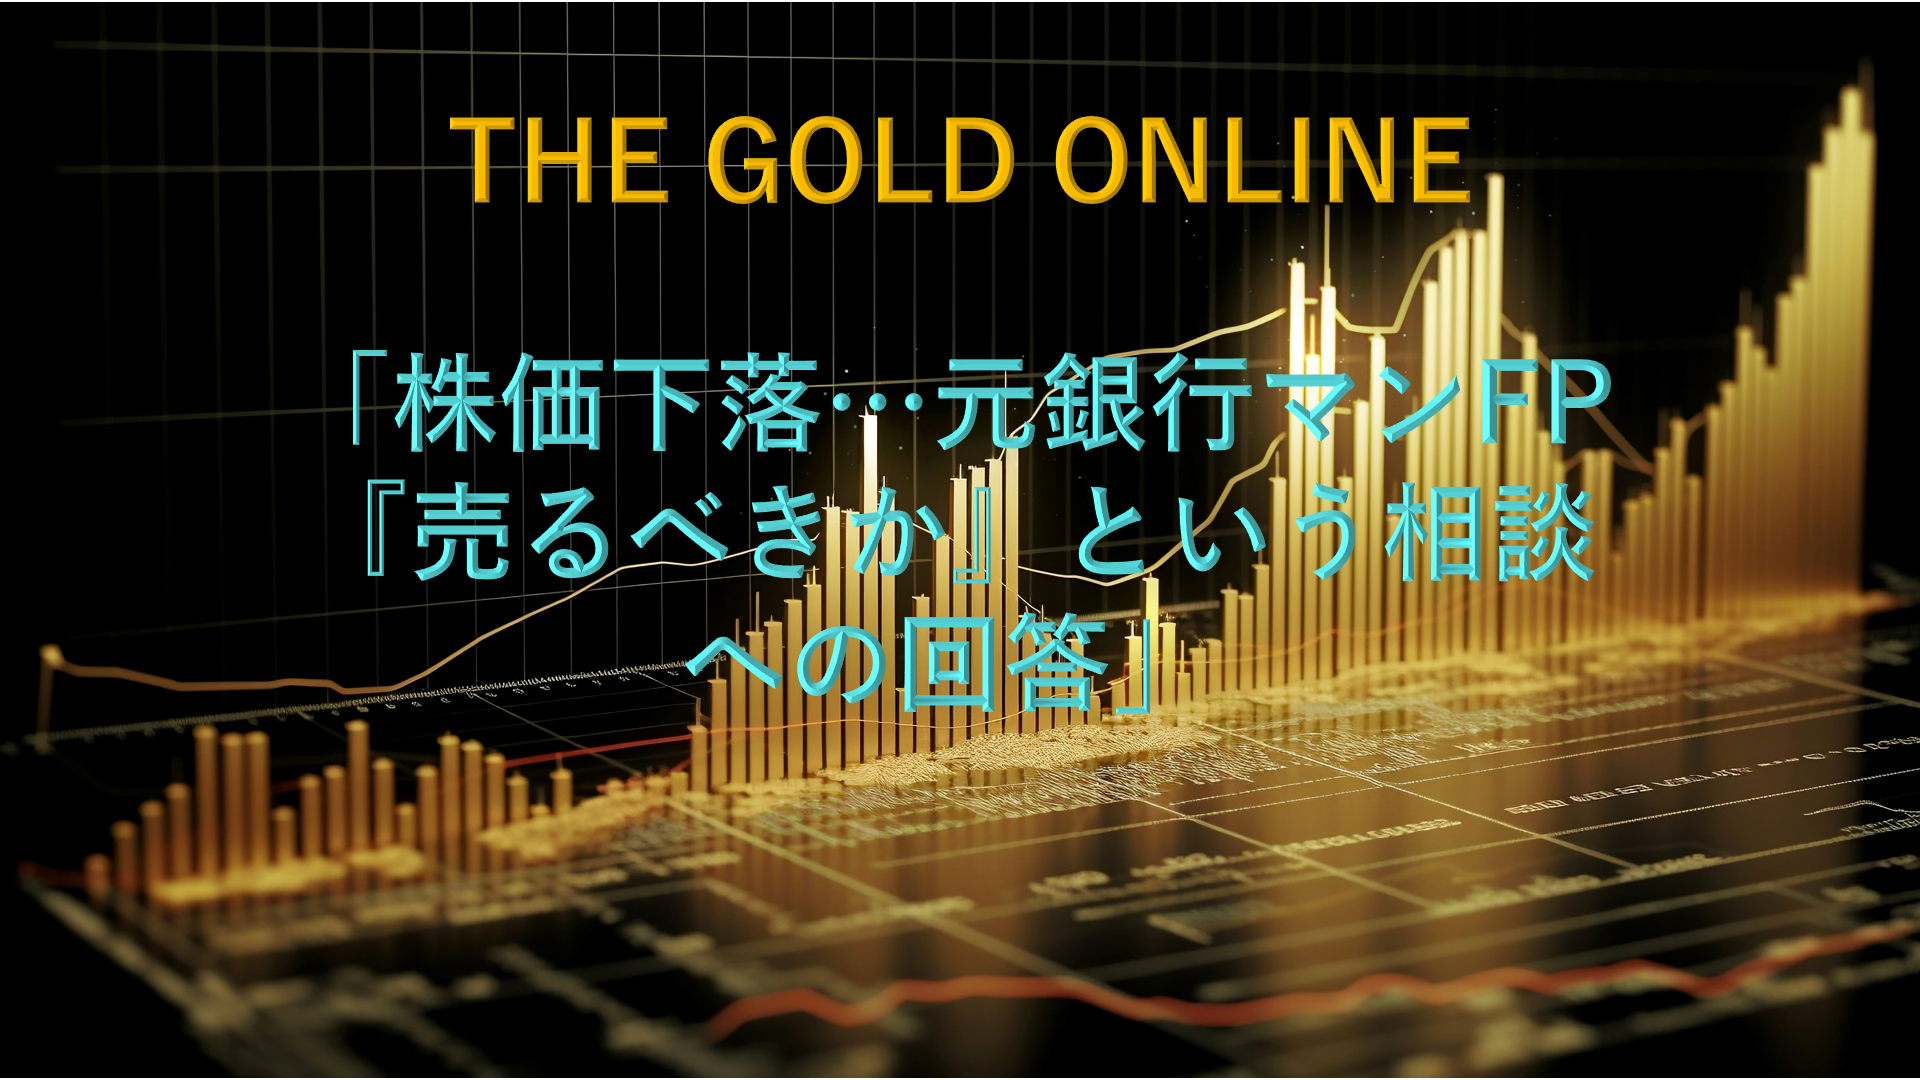 【メディア実績】THE GOLD ONLINE「株価下落…元銀行マンFP『売るべきか』という相談への回答」